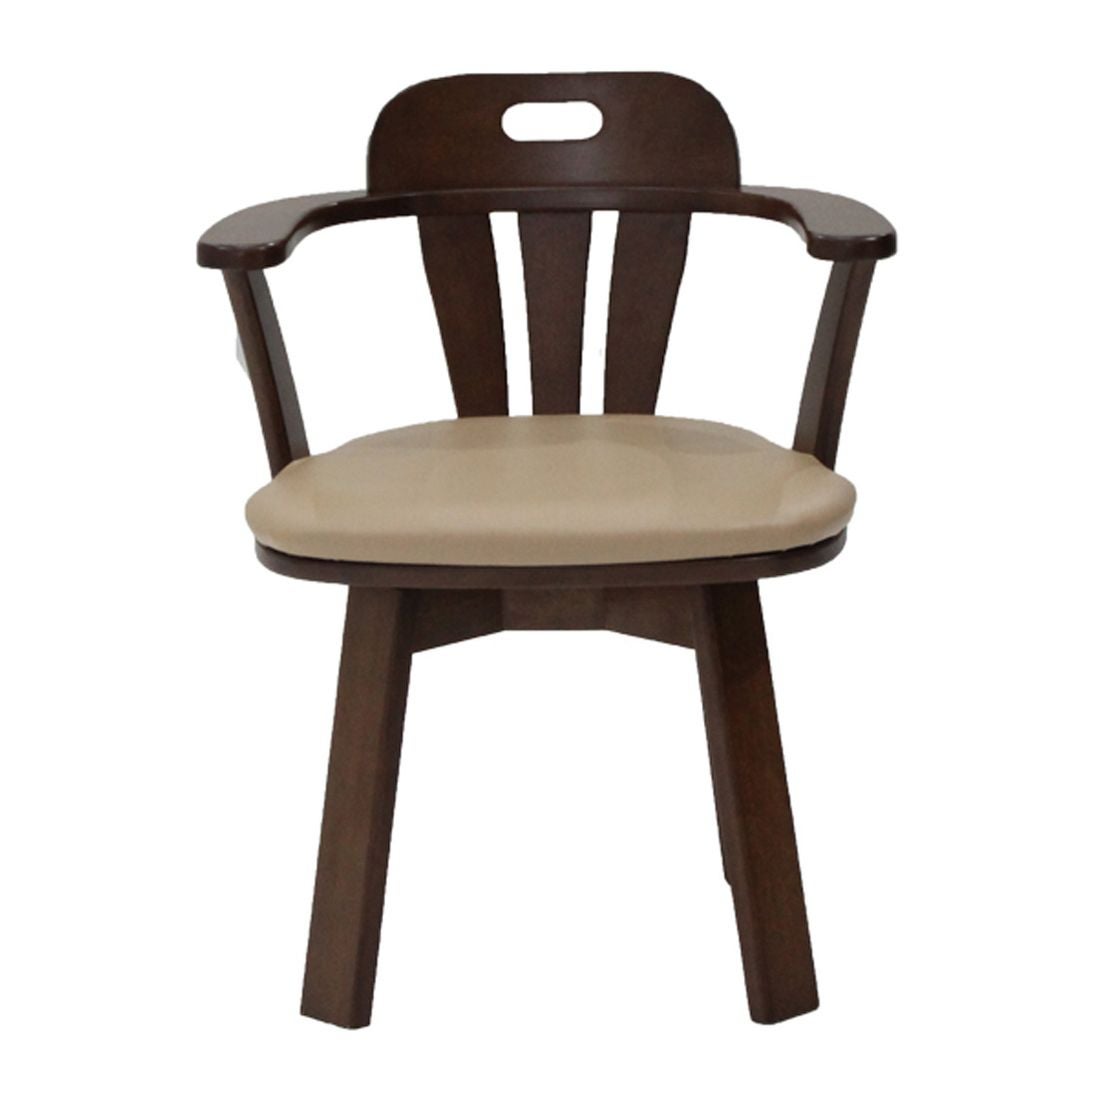 เก้าอี้ทานอาหาร เก้าอี้ไม้เบาะหนัง รุ่น Trundle-SB Design Square